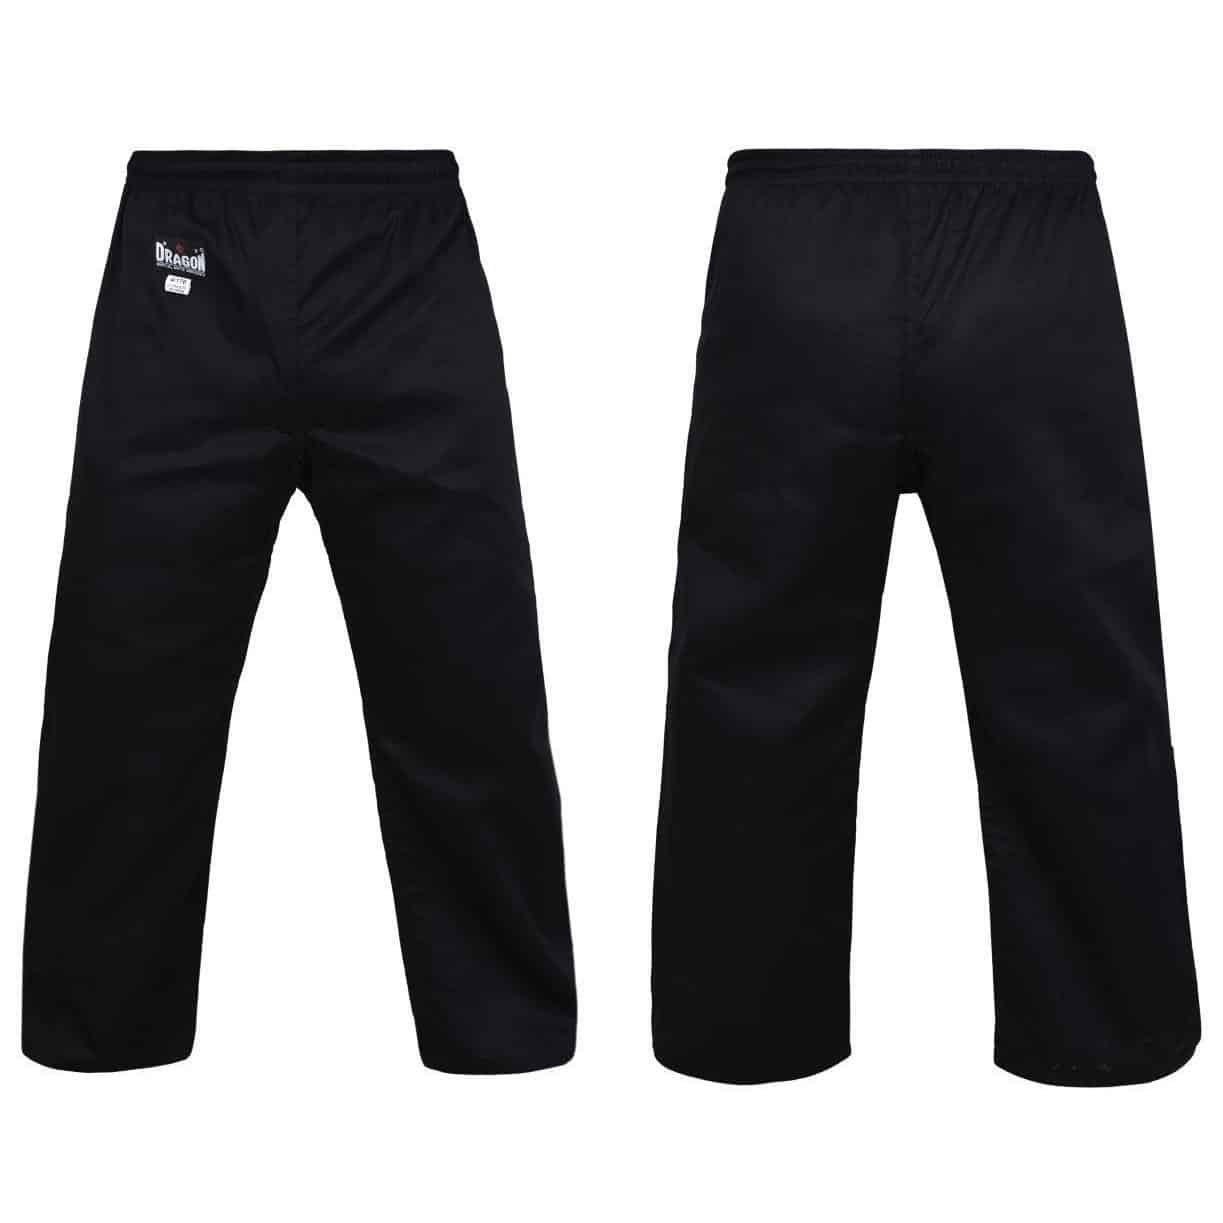 DRAGON Gi Martial Arts Pants (8oz) Black - Martial Arts Pants - MMA DIRECT